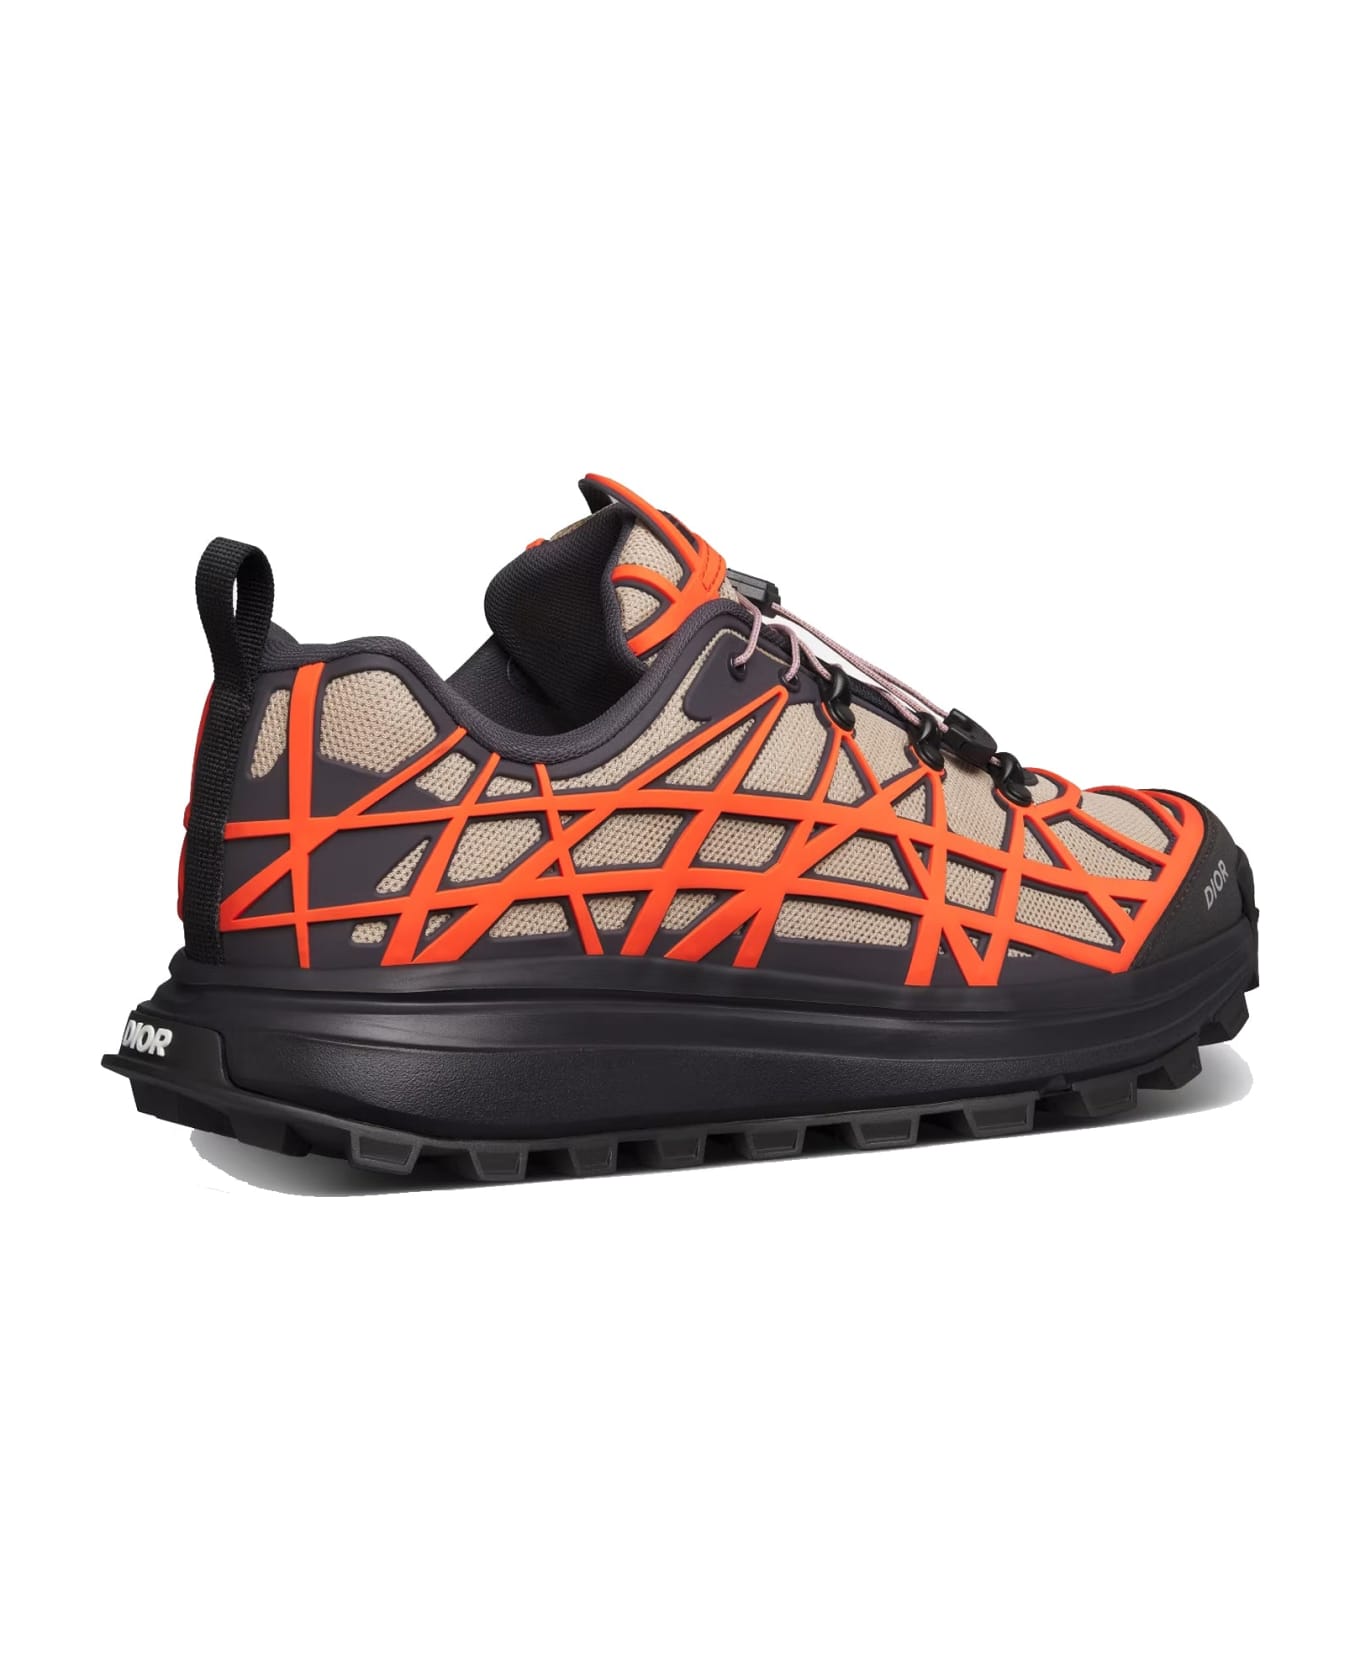 Dior B31 Runner Sneaker - Orange スニーカー